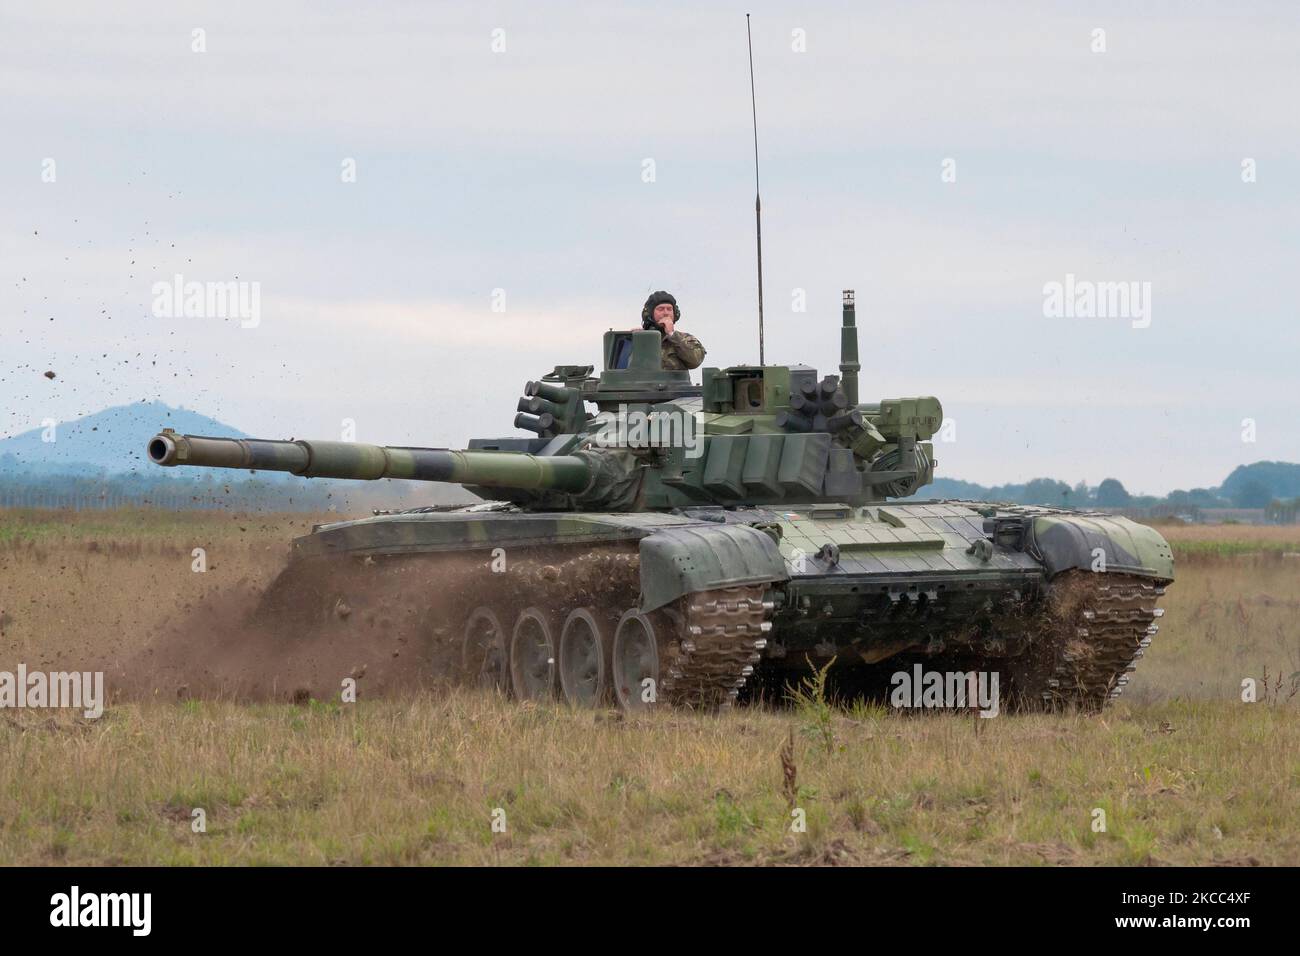 Esercito ceco T-72M4 battaglia principale serbatoio. Foto Stock